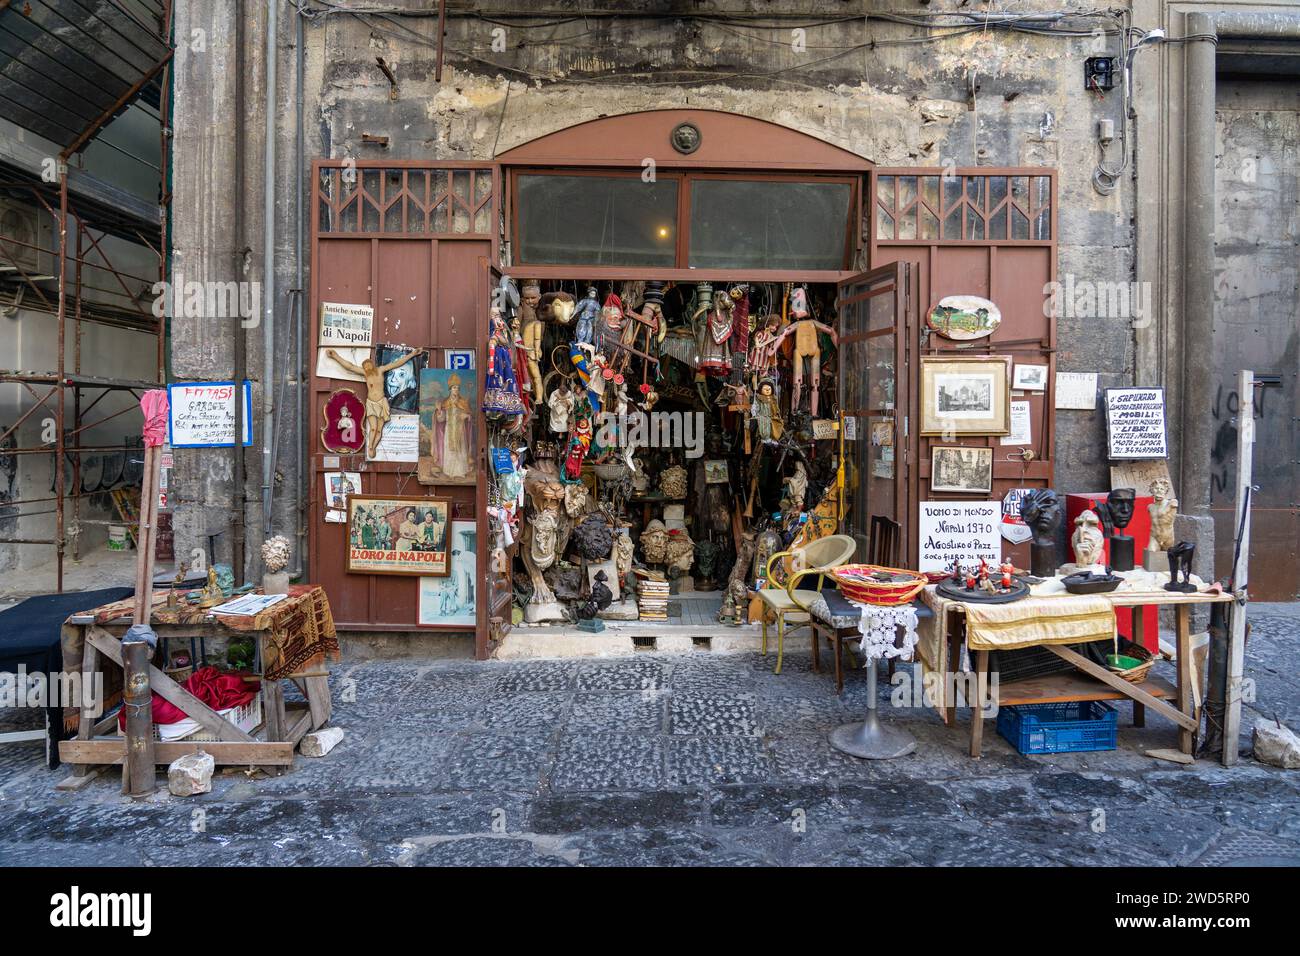 Skurriler Shop mit handgefertigten Produkten aus Masken und religiösen Gegenständen in Neapel-Italien. Stockfoto